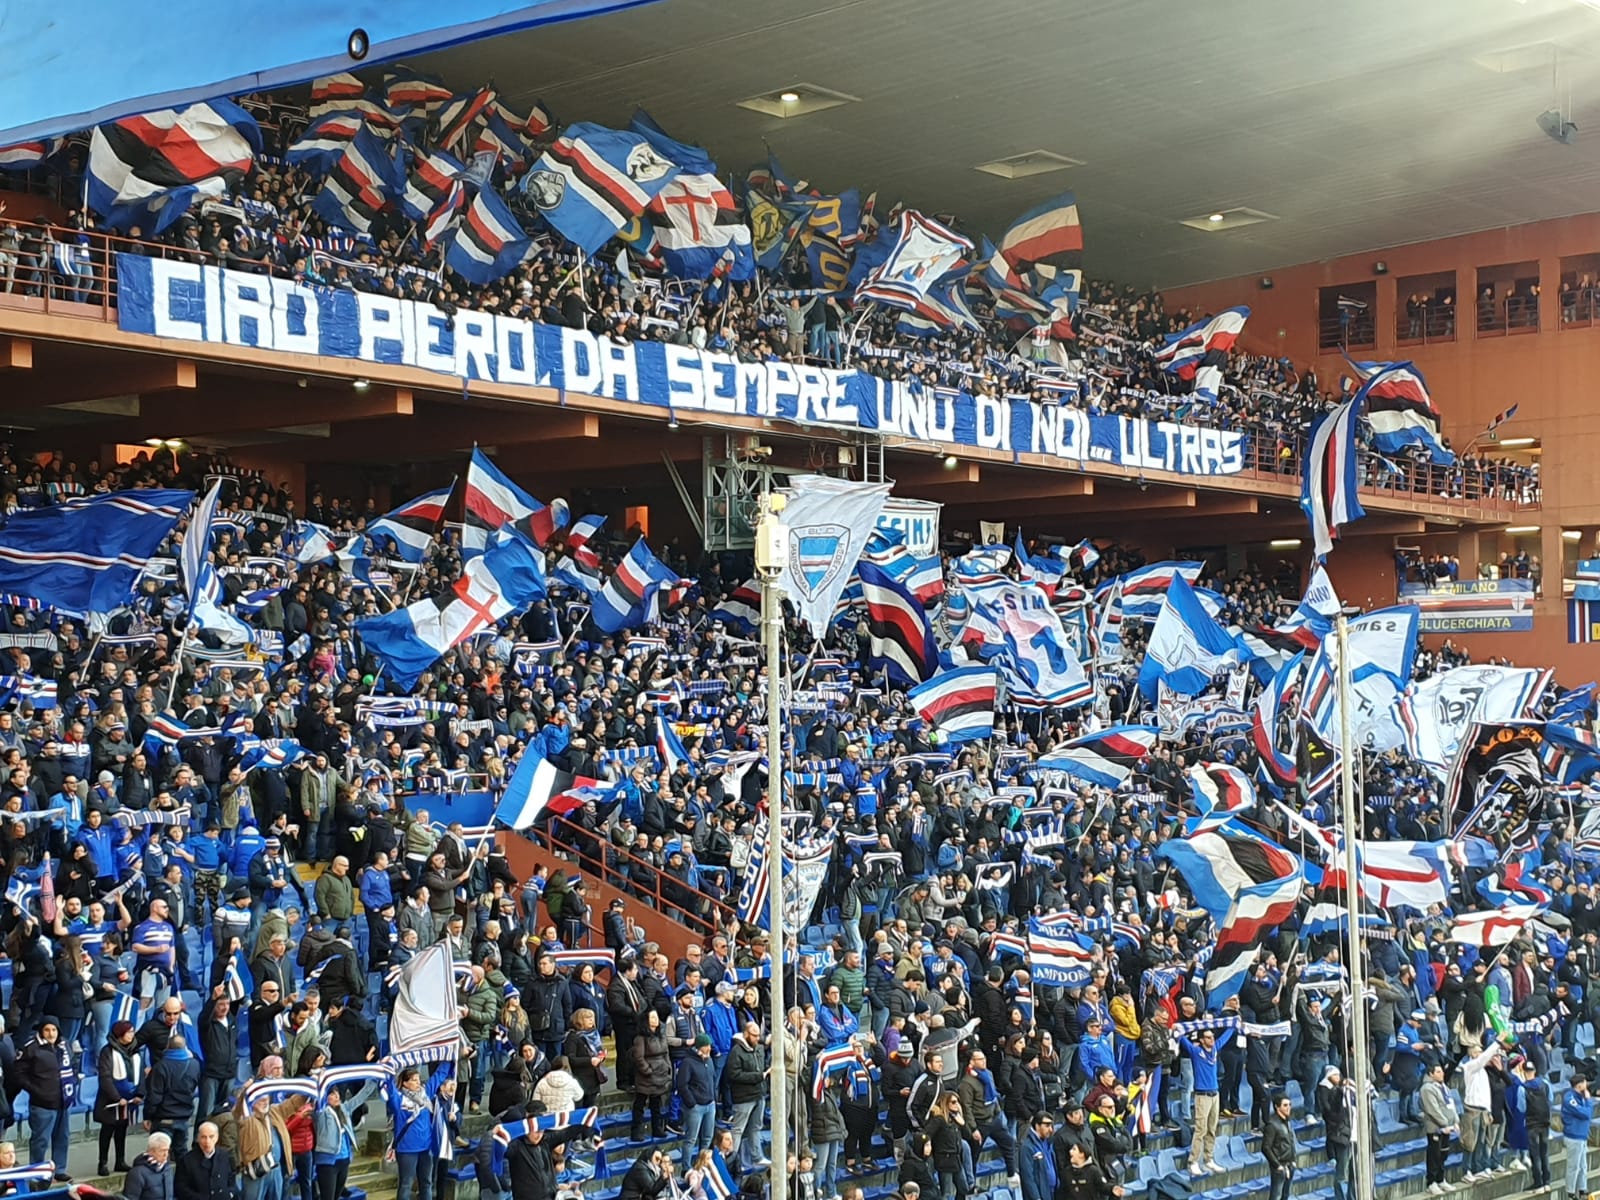 Sampdoria-Brescia 2019/2020